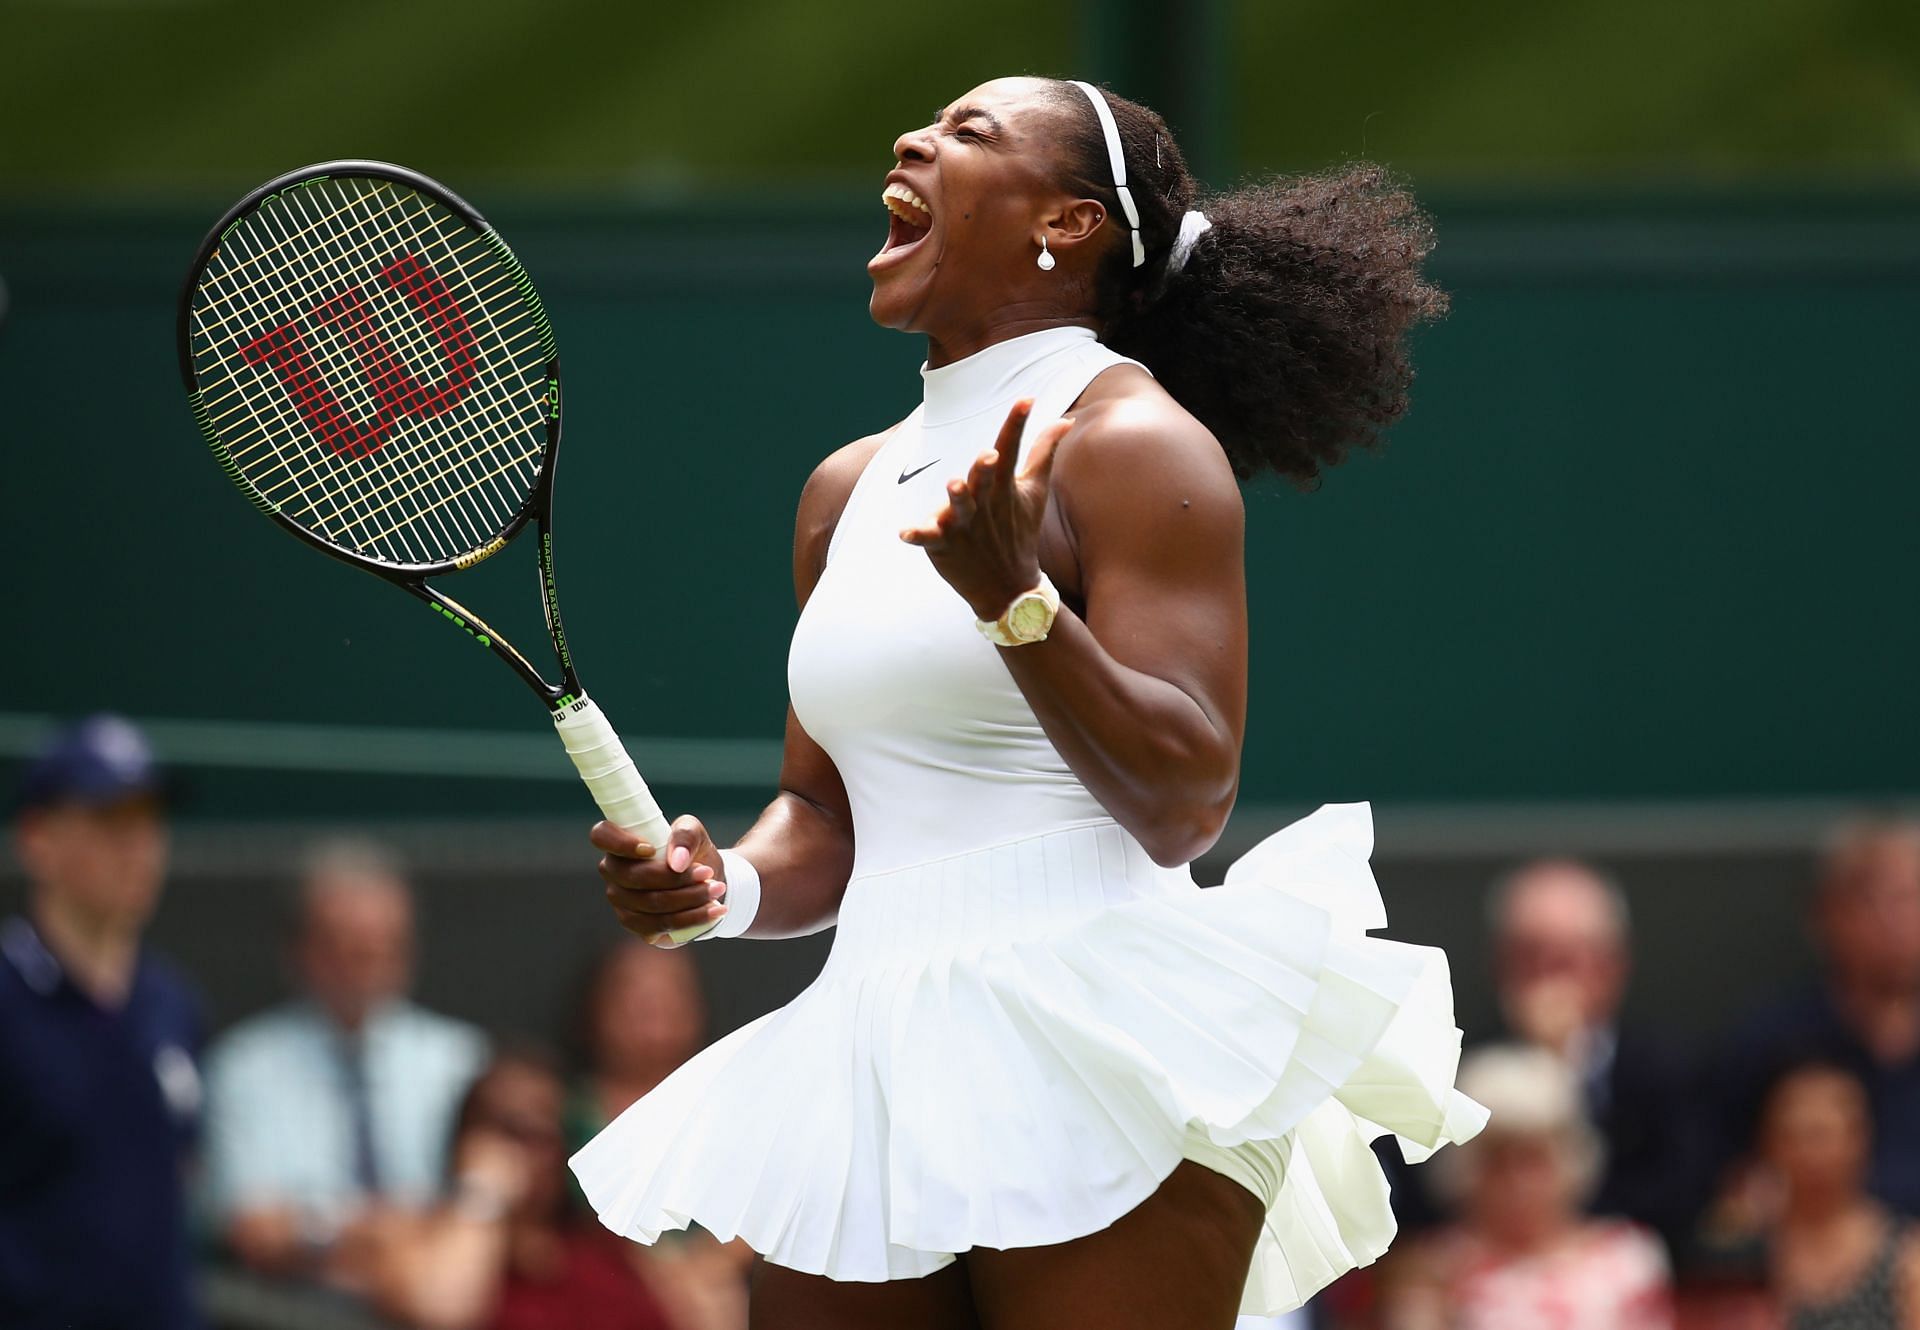 Serena Williams at the 2016 Wimbledon Championships